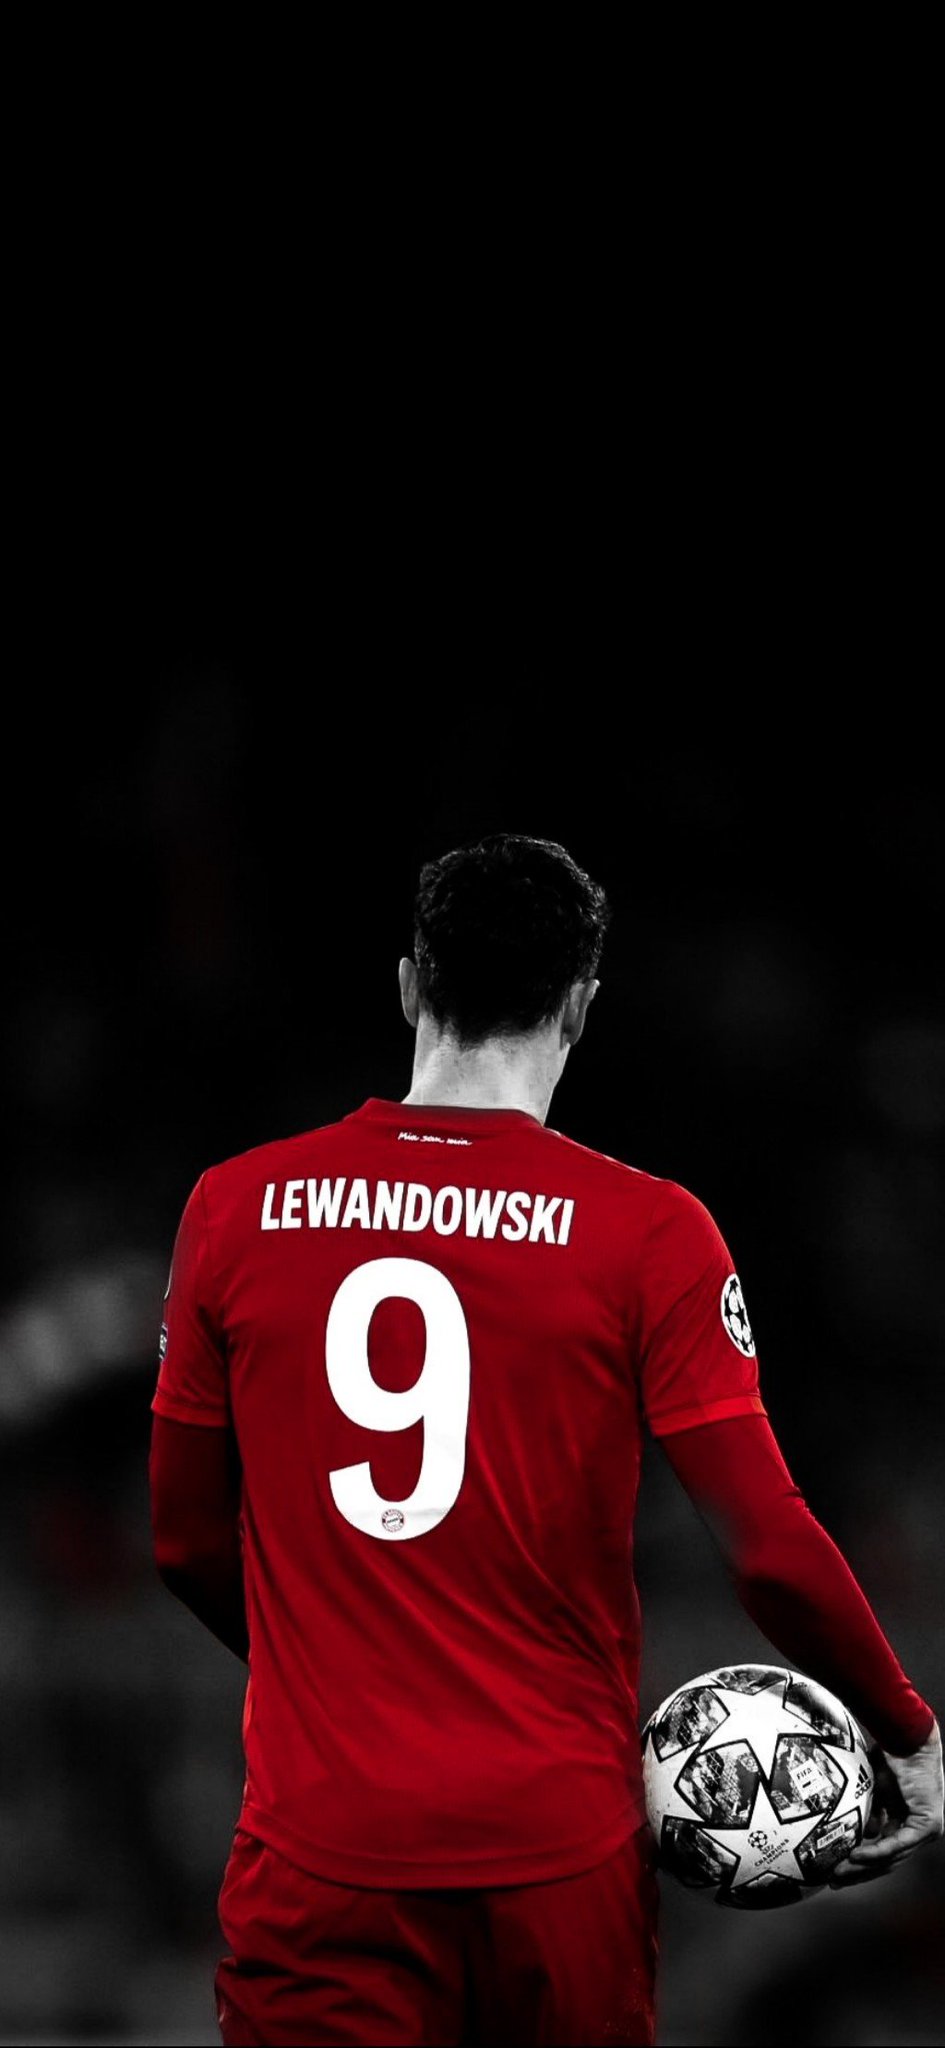 lewandowski kit number